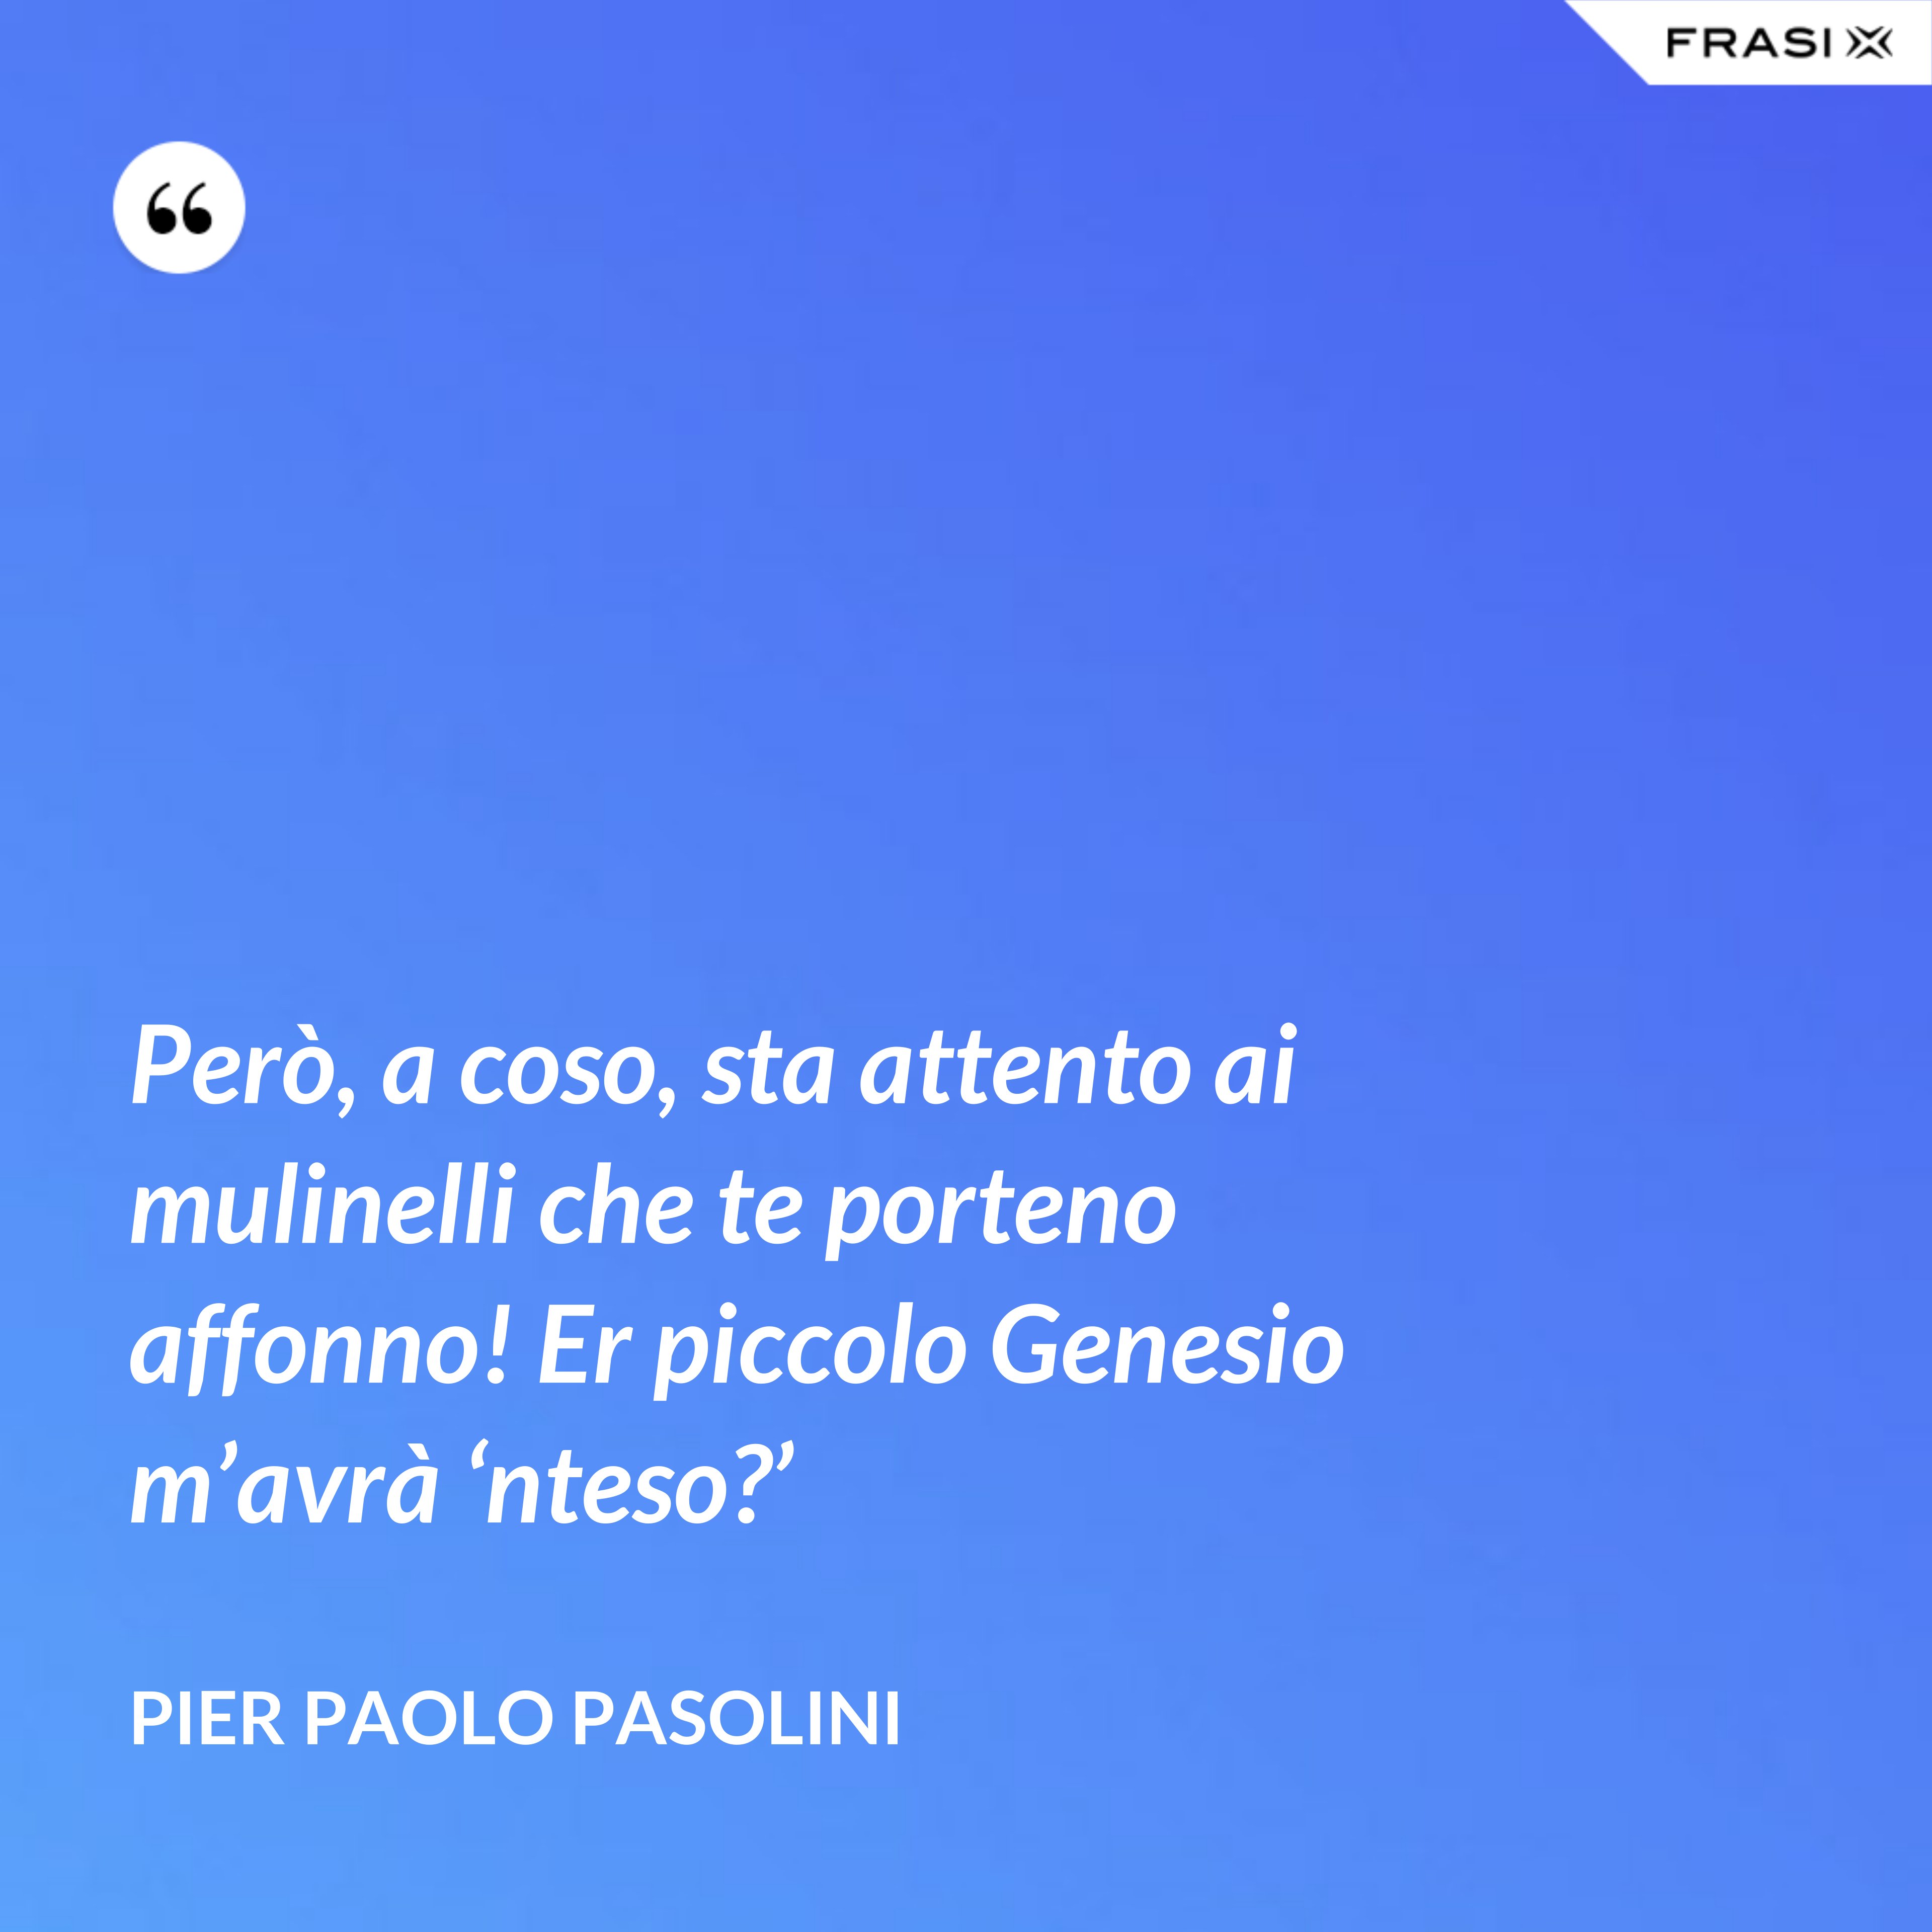 Però, a coso, sta attento ai mulinelli che te porteno affonno! Er piccolo Genesio m’avrà ‘nteso?’ - Pier Paolo Pasolini